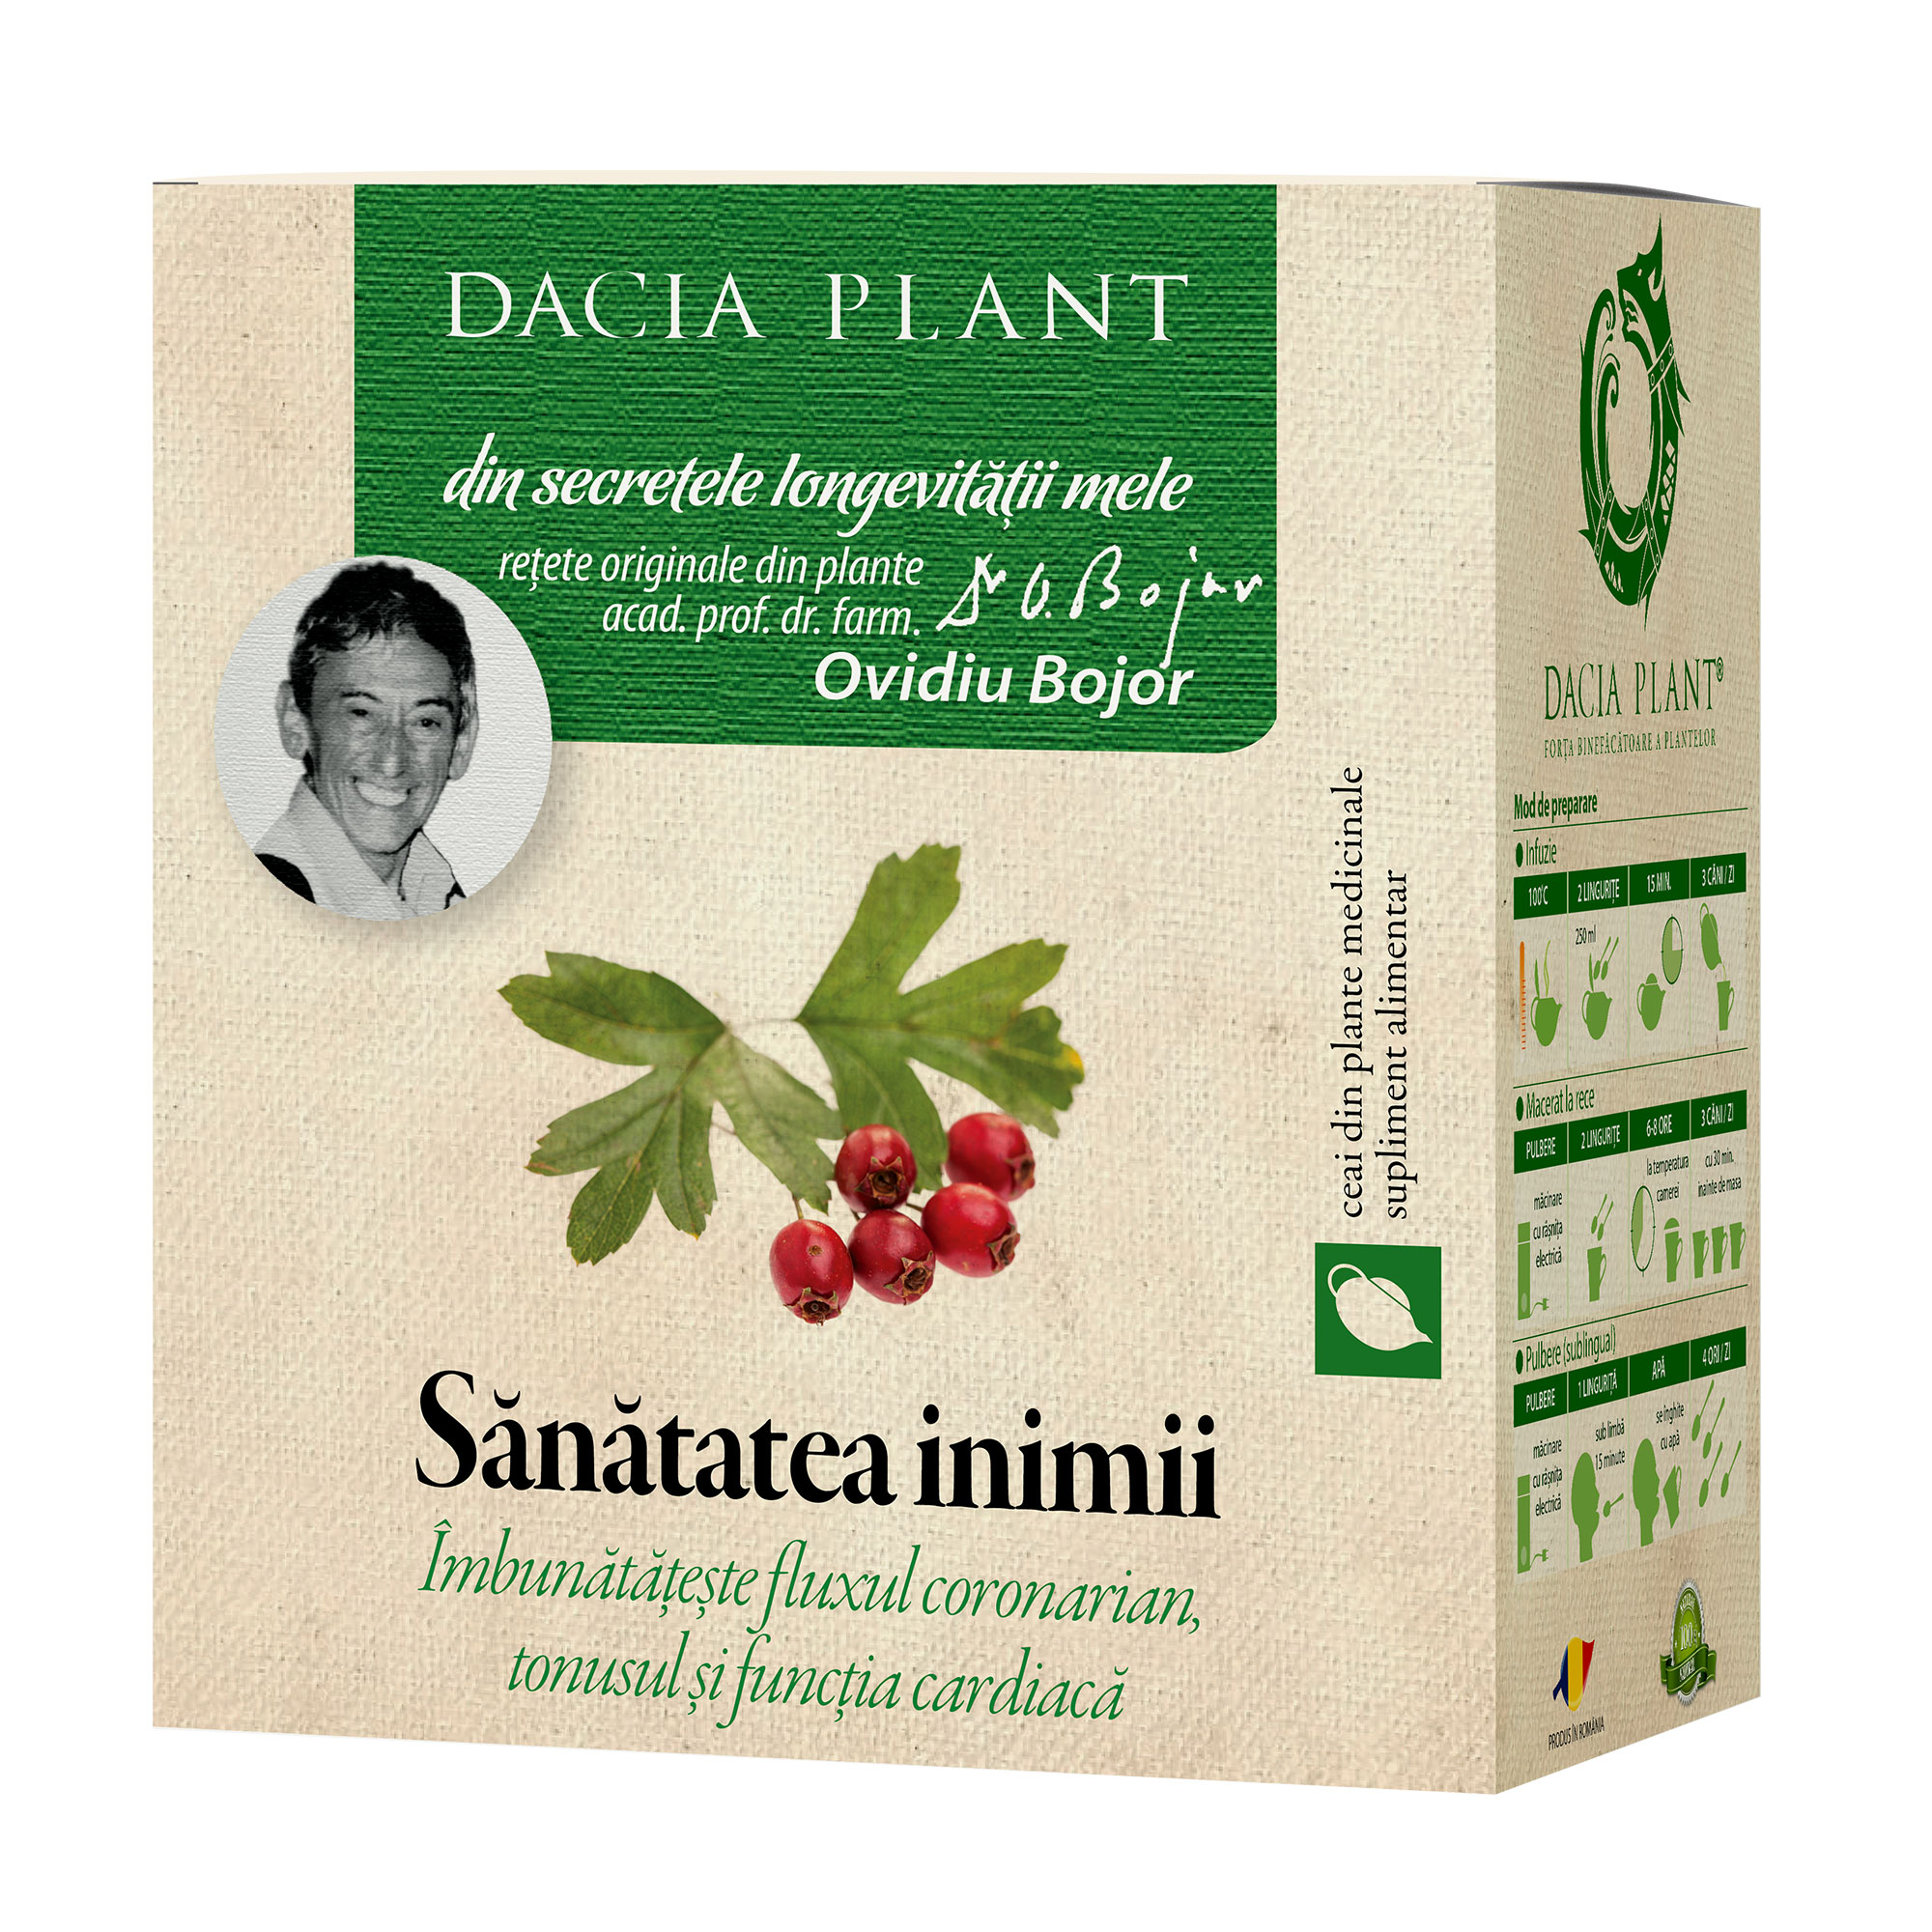 Ceai din plante medicinale Sănătatea inimii, 50 g, Dacia Plant